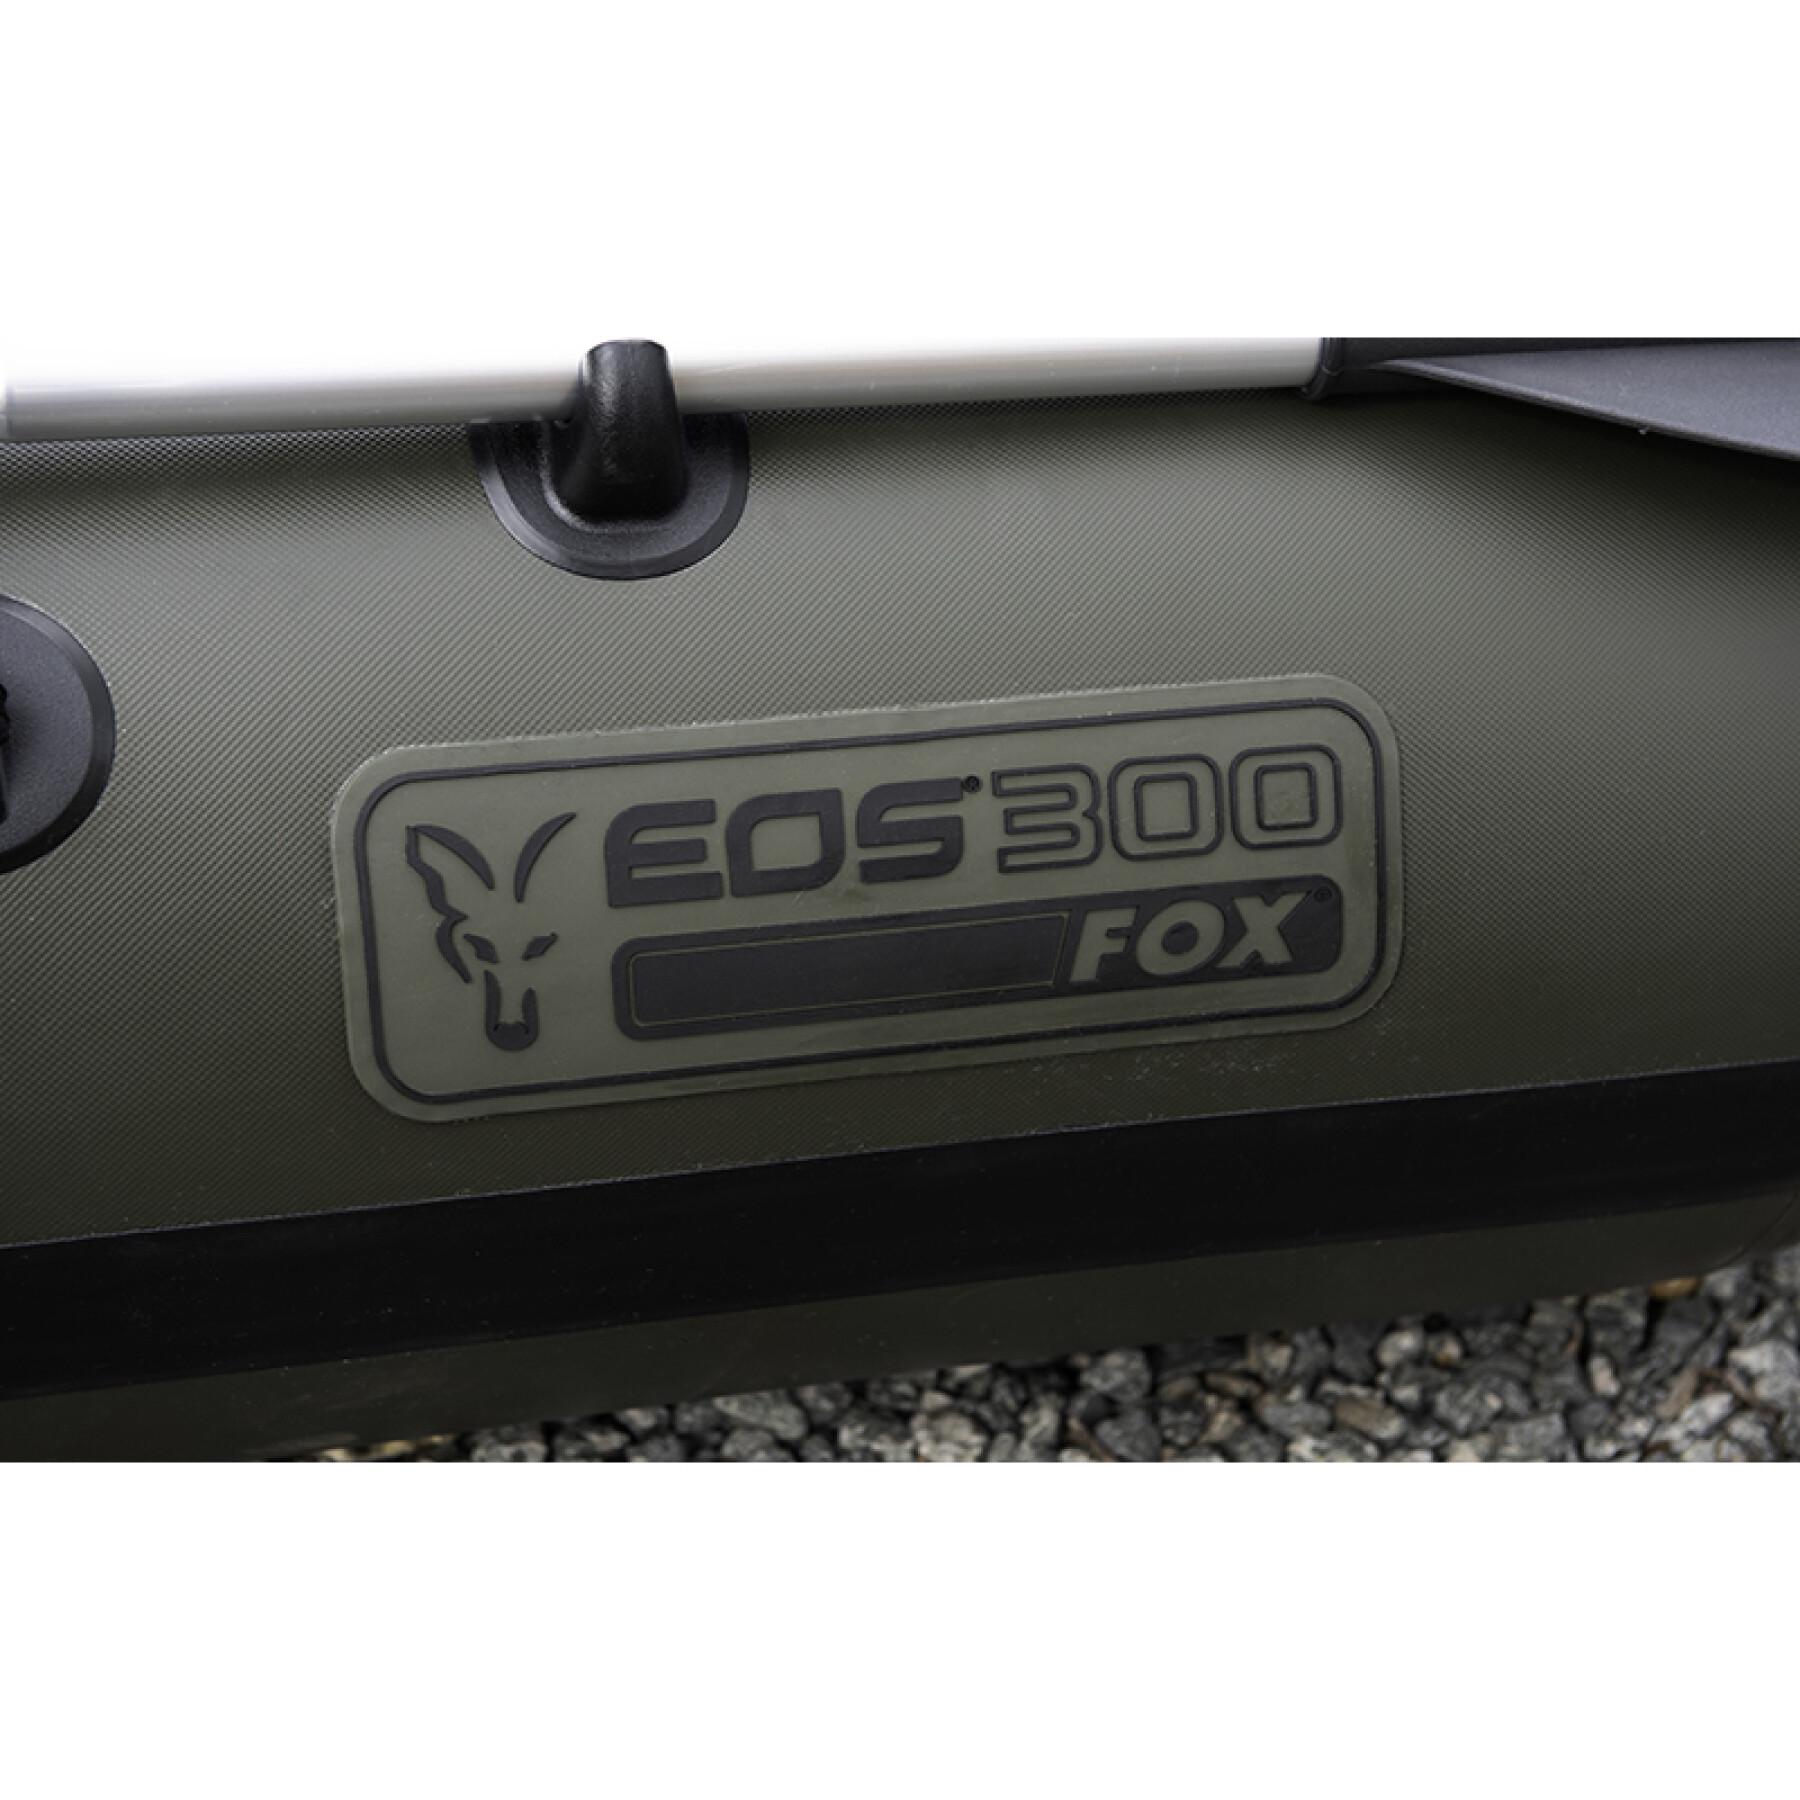 Barco insuflável Fox EOS 300